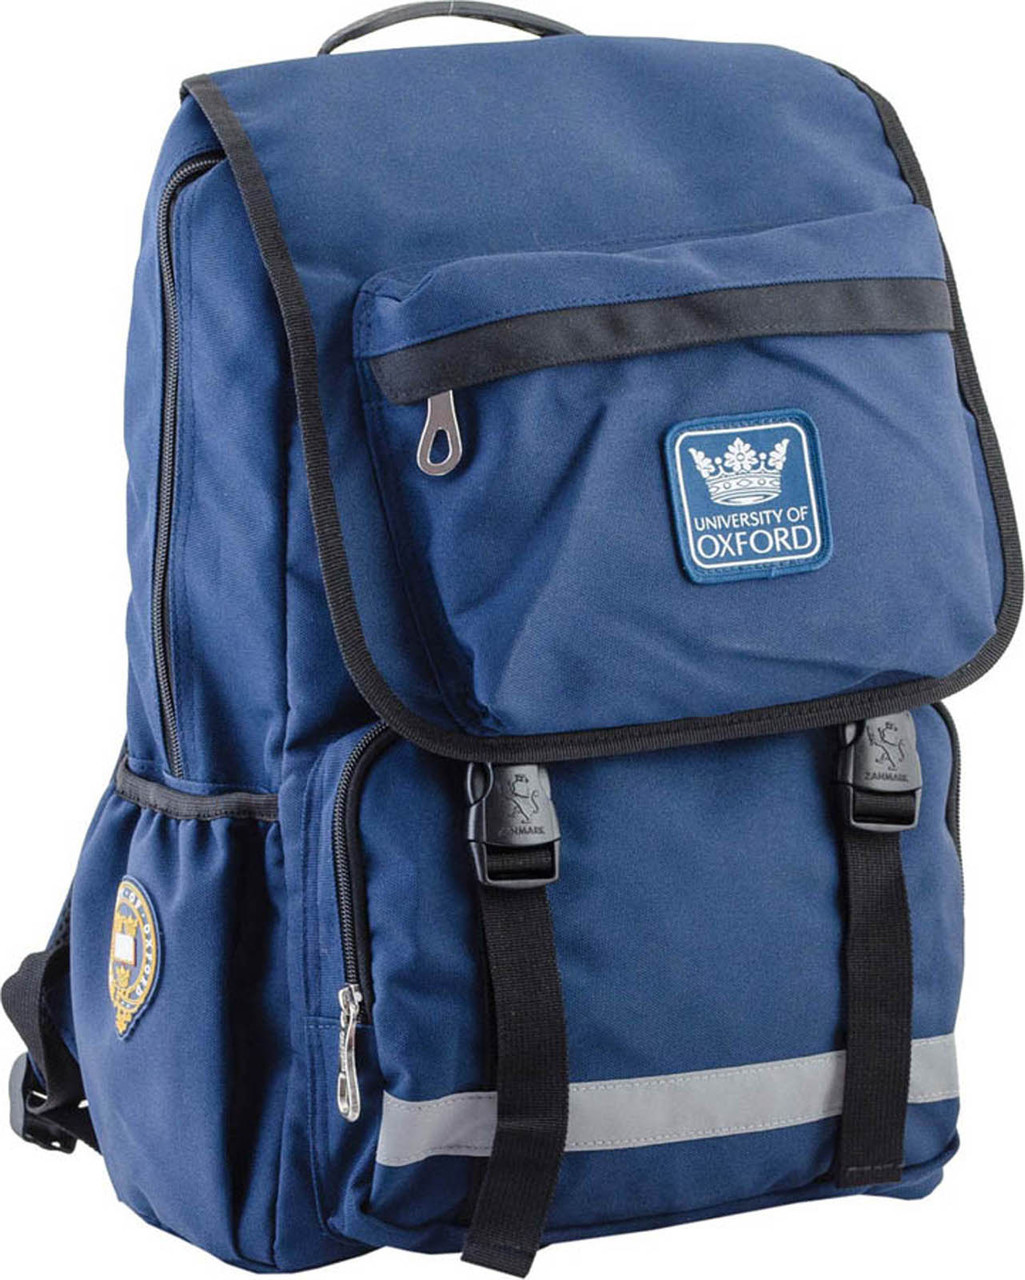 Рюкзак подростковый YES  OX 228, синий, 30*45*15